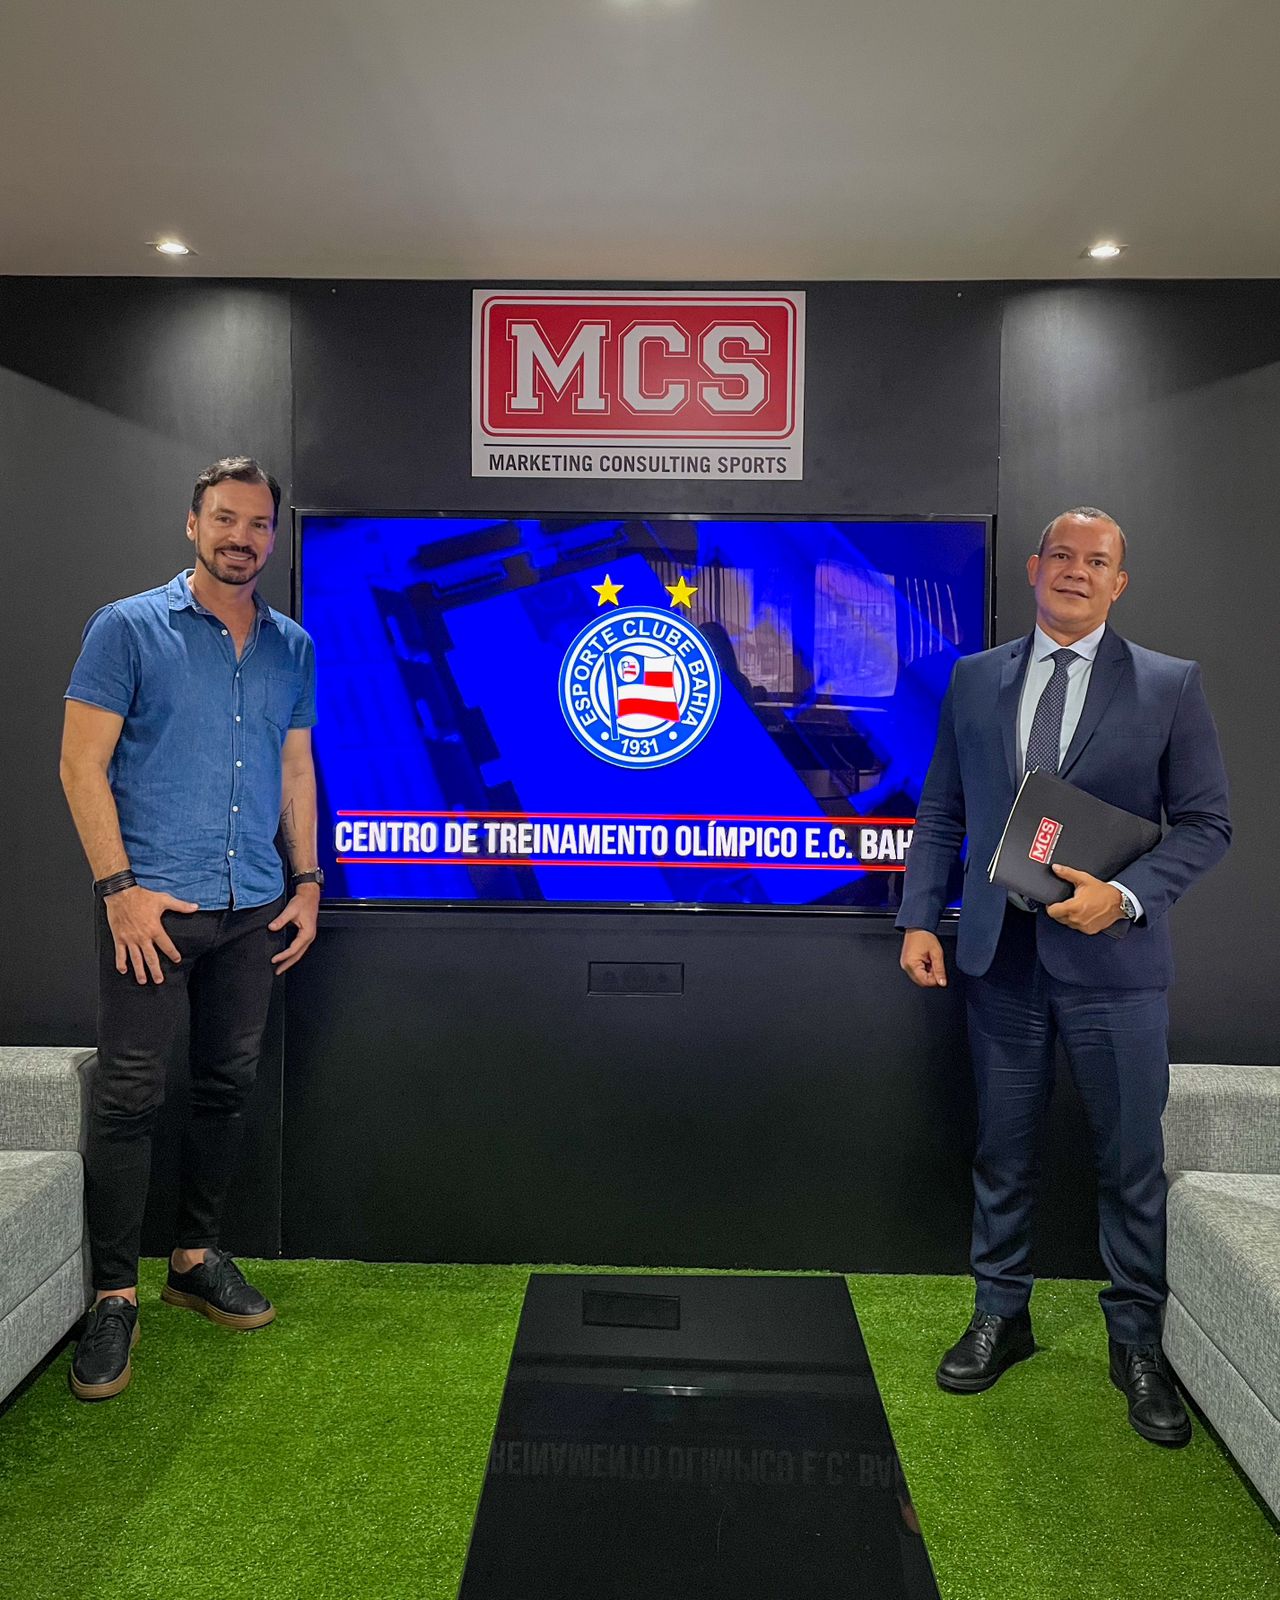 MCS será a agência de Marketing Esportivo do Esporte Clube Bahia